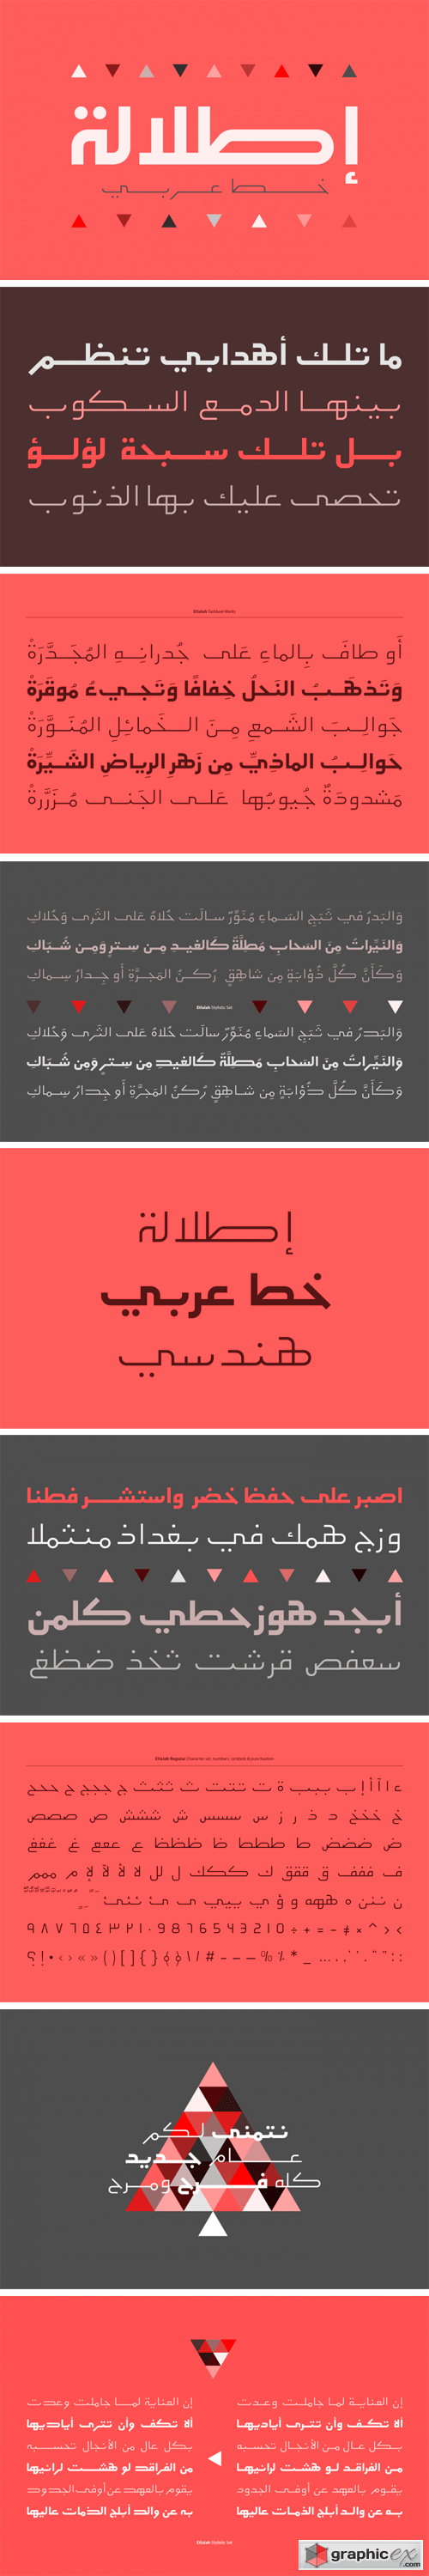 Etlalah - Arabic Typeface